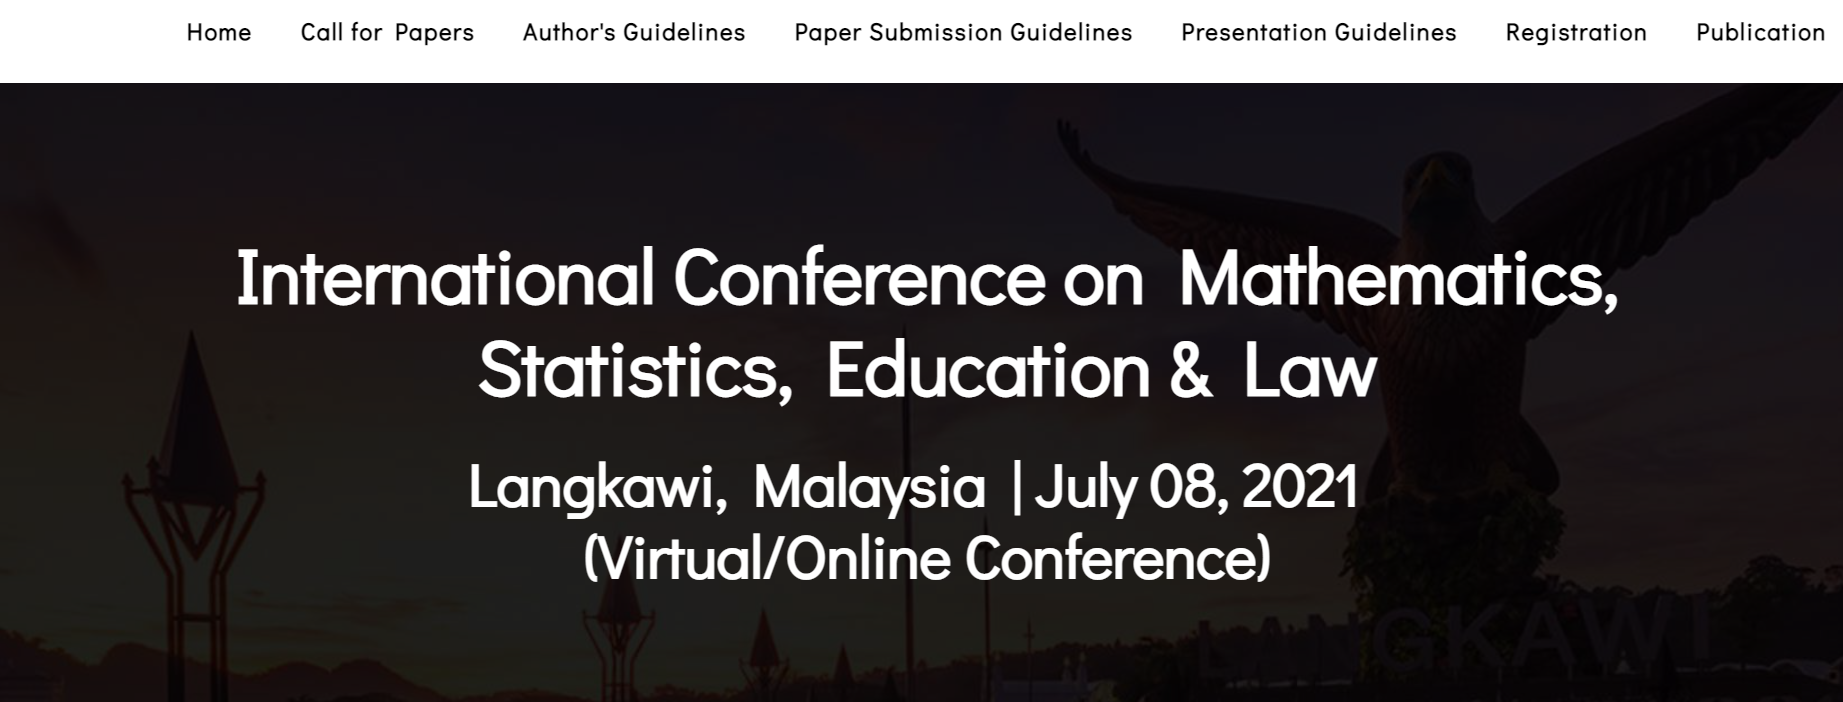 International Conference on Mathematics, Statistics, Education & Law, Langkawi, Malaysia, Malaysia